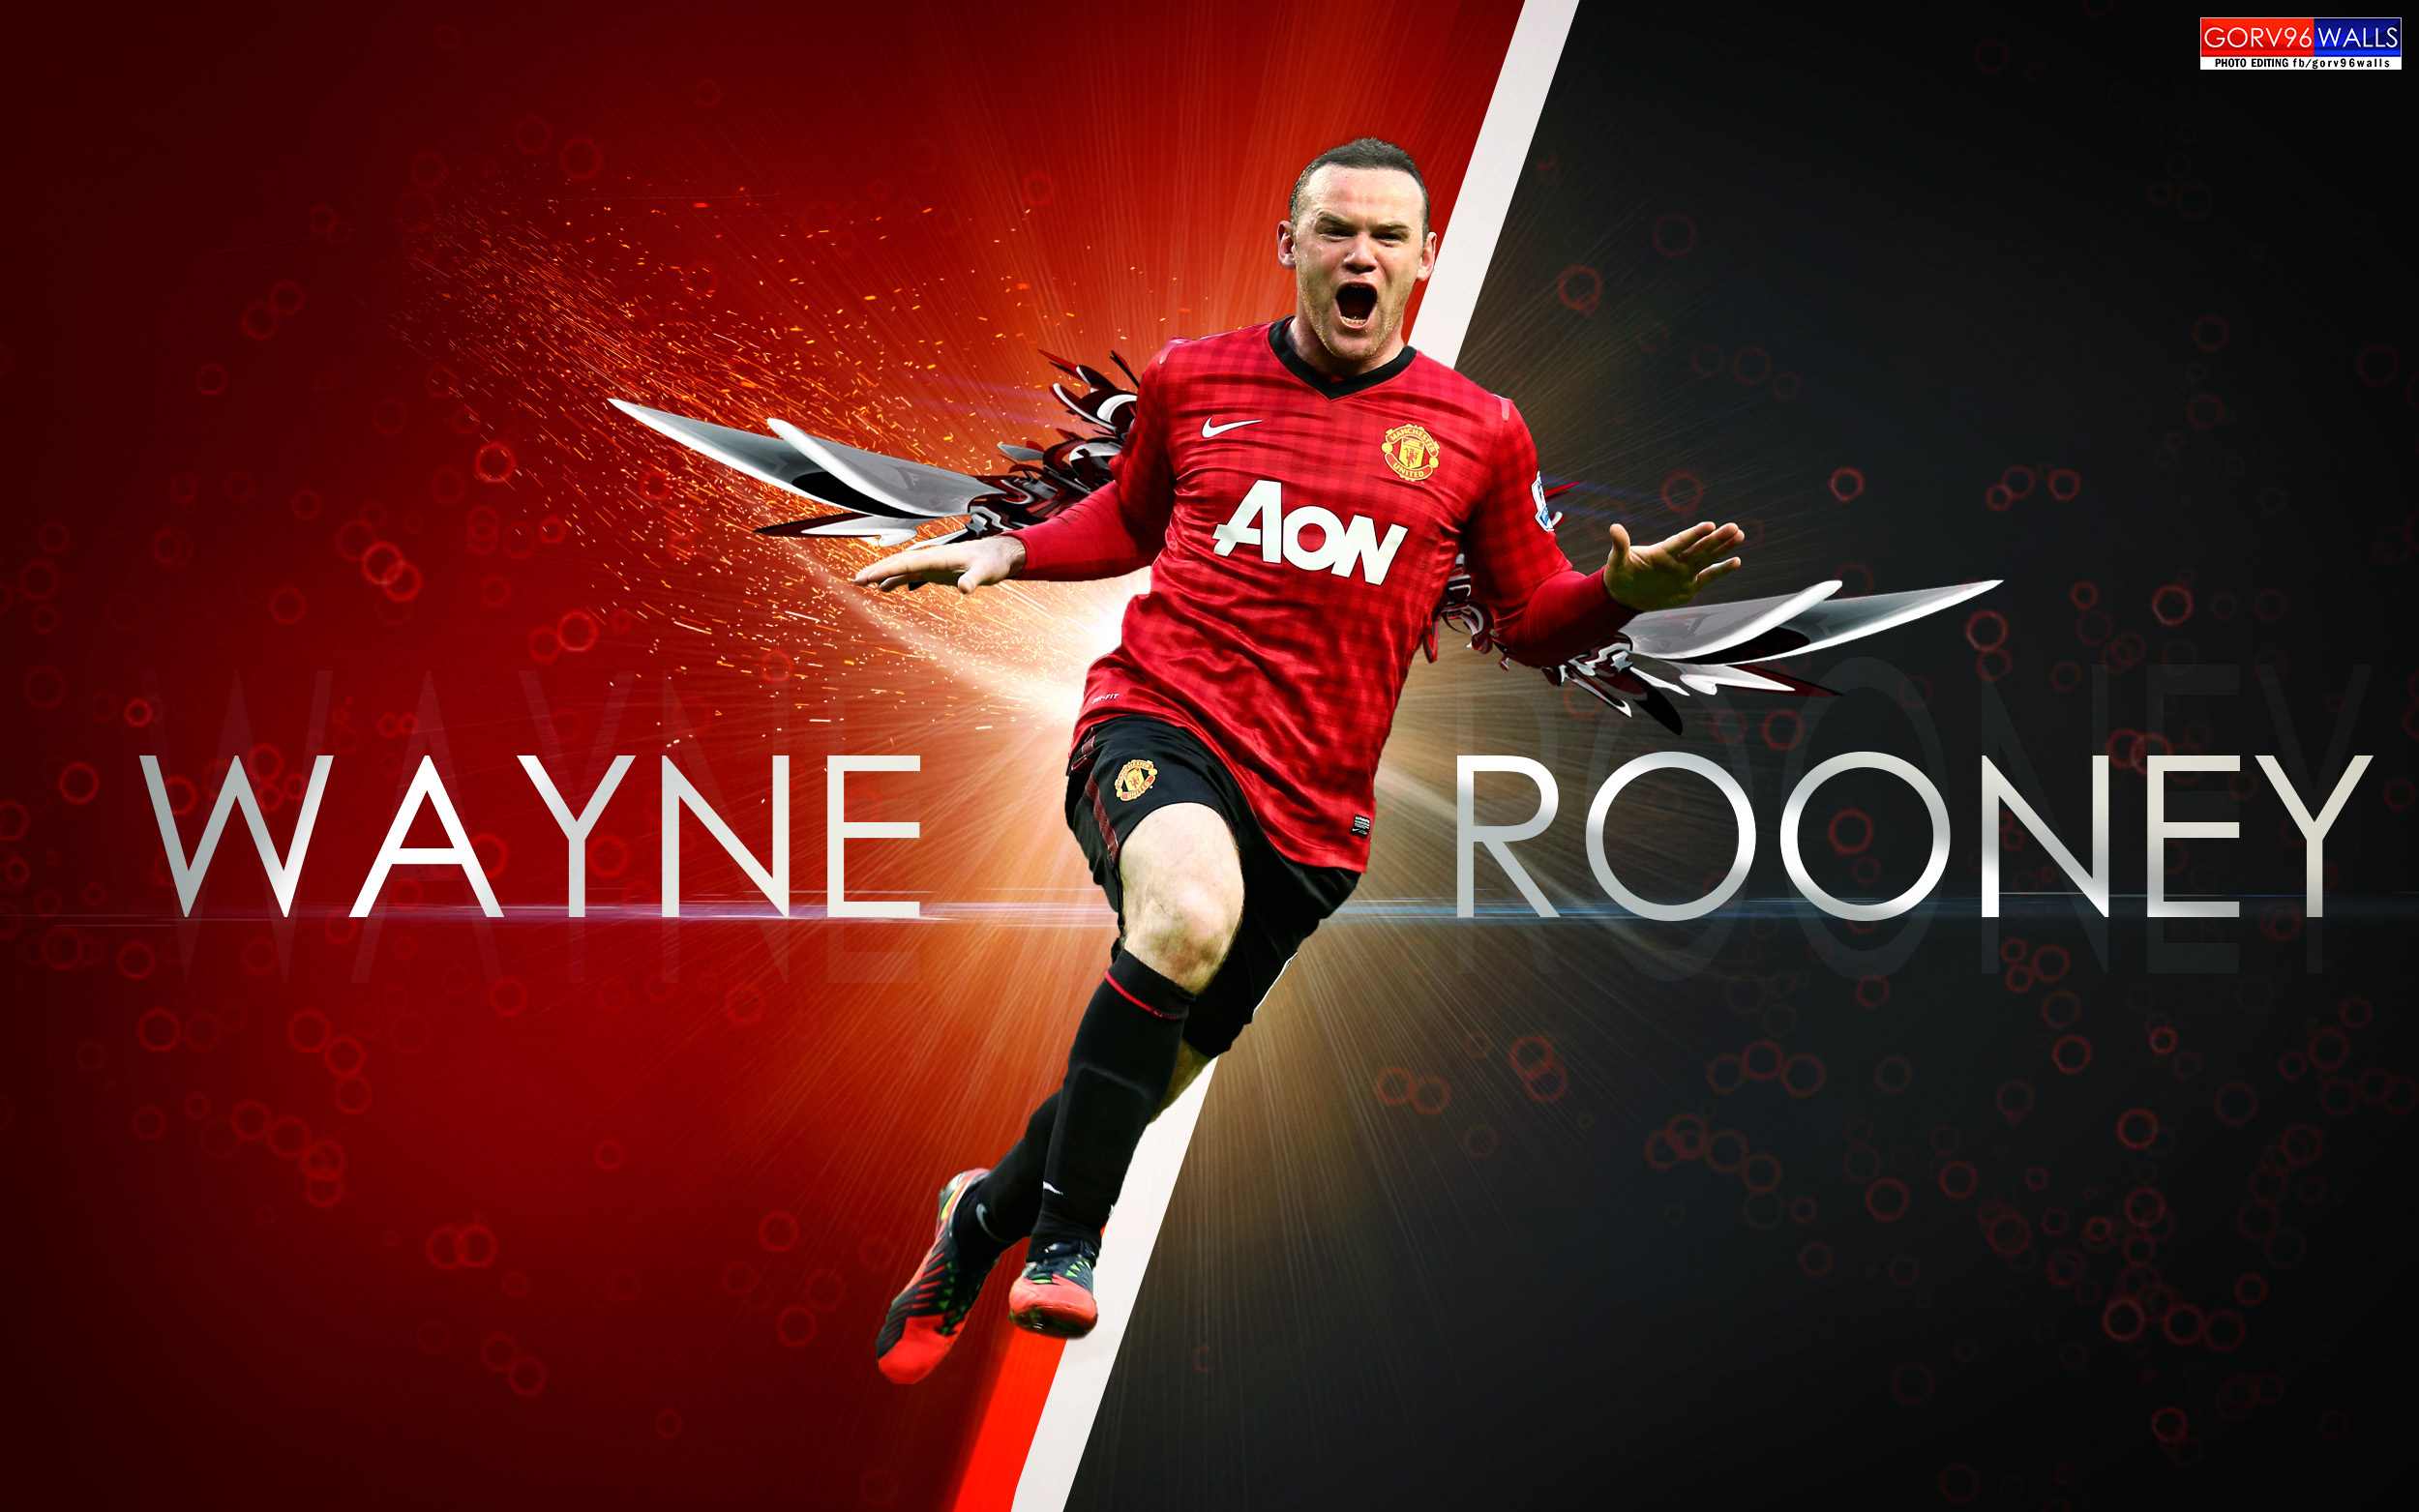 Wayne Rooney Wallpaper Nike - wallpaper.